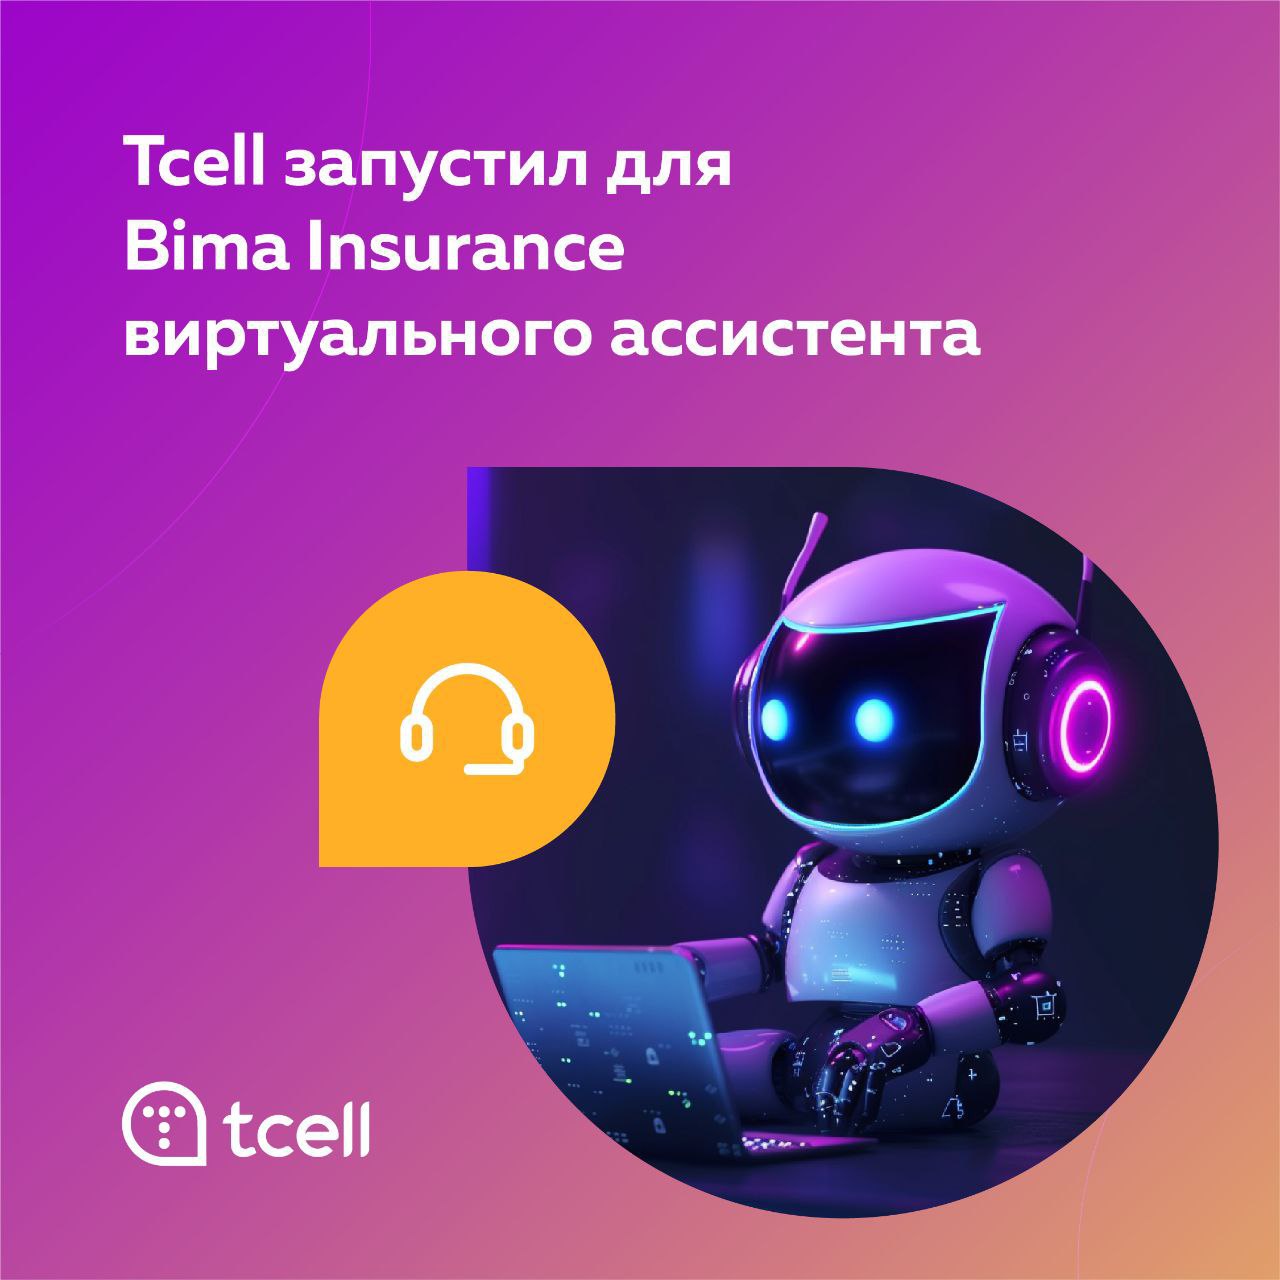 TCELL в партнерстве BIMA Insurance и TWIN запустил виртуального ассистента «БИМА»